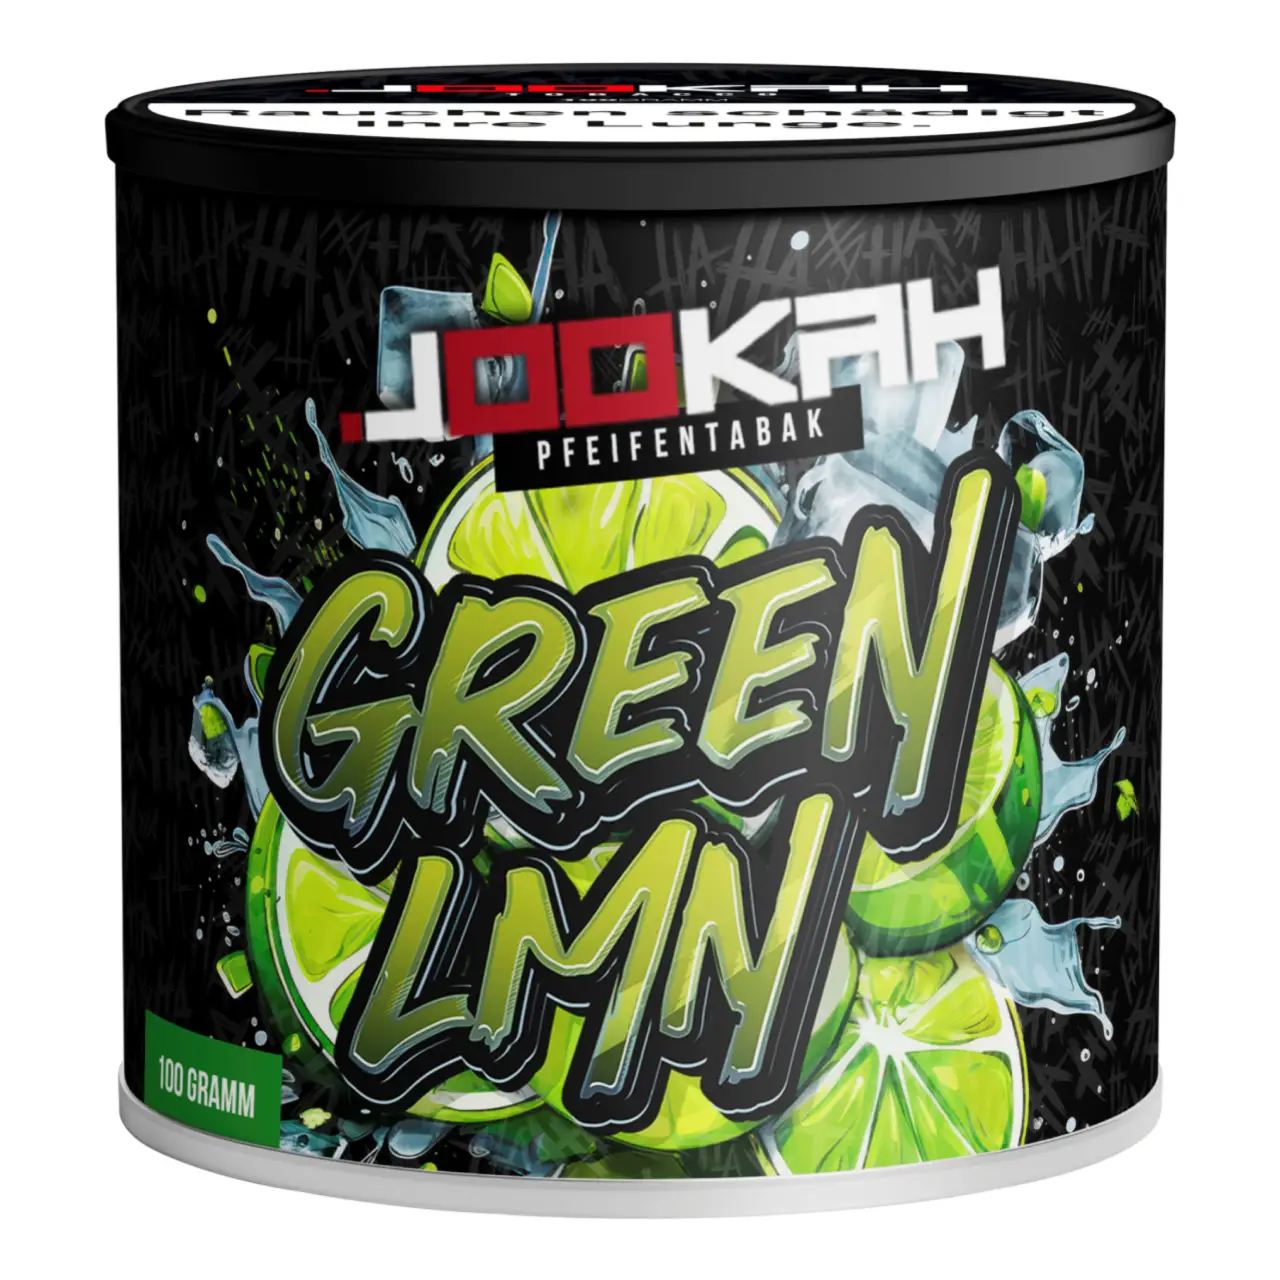 Jookah Pfeifentabak Green Lmn - Limette Menthol - 100g